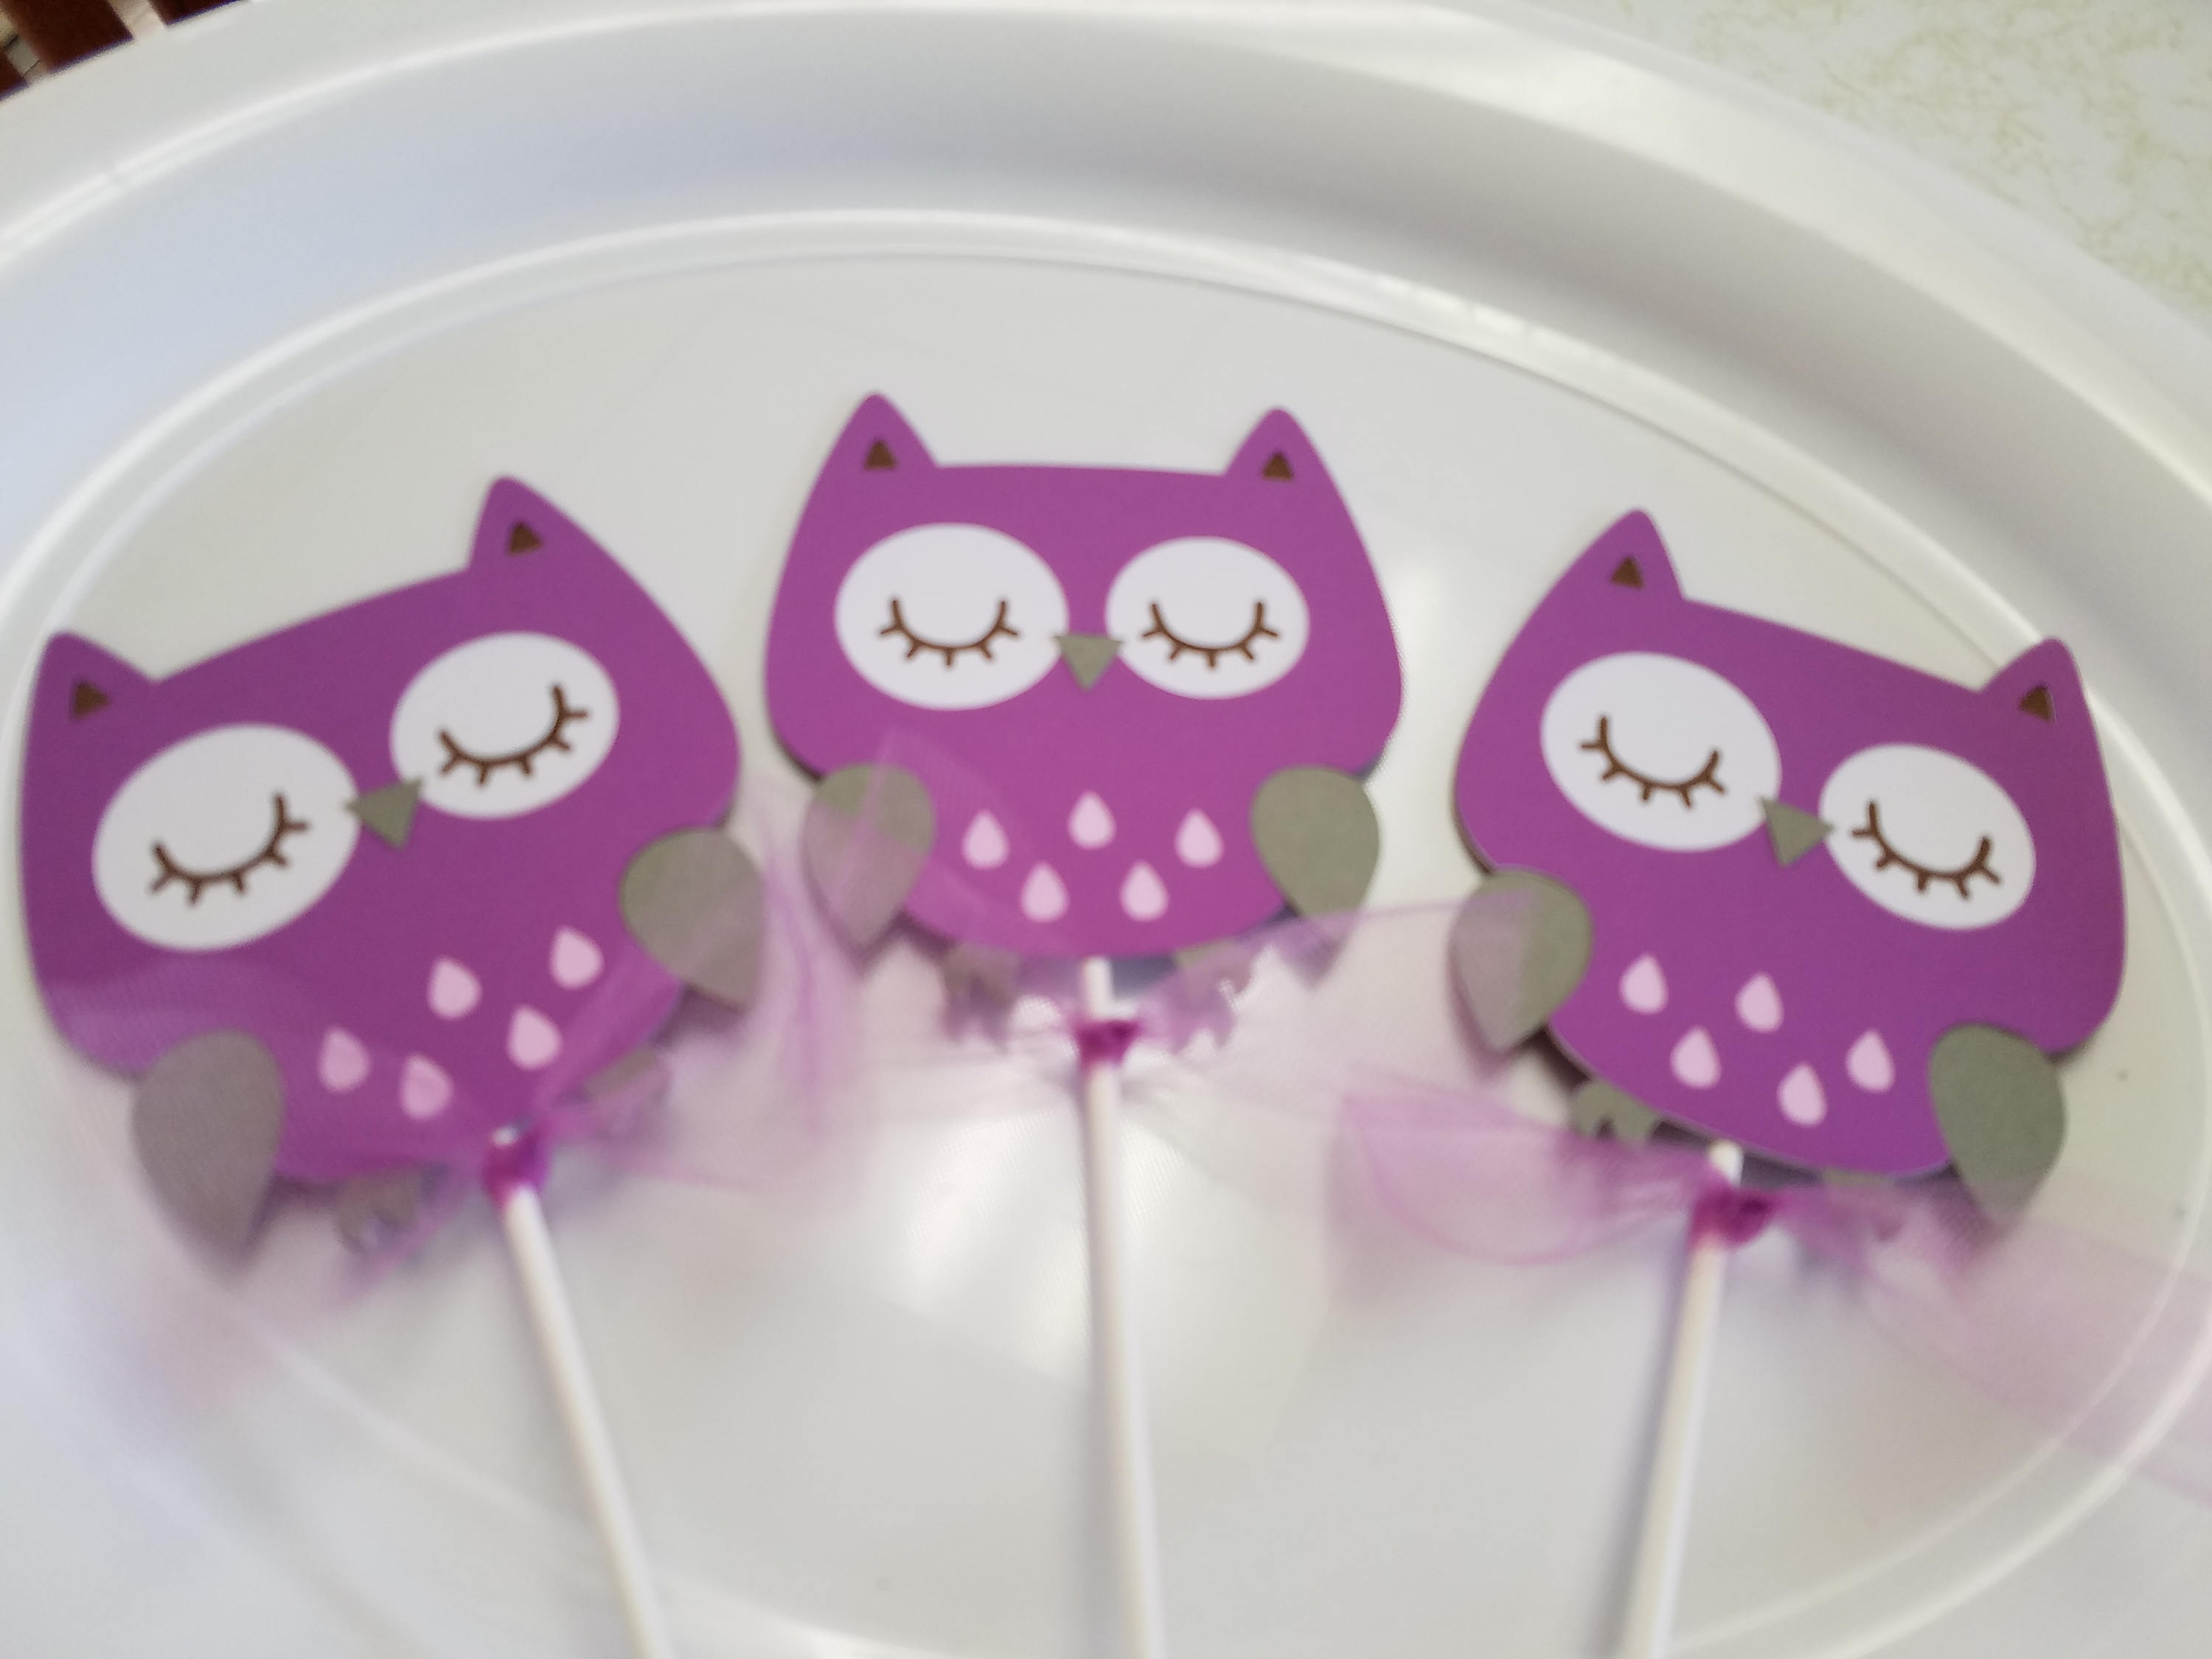 Owl centerpiece sticks, owls baby shower, owl birthday, owl decorations